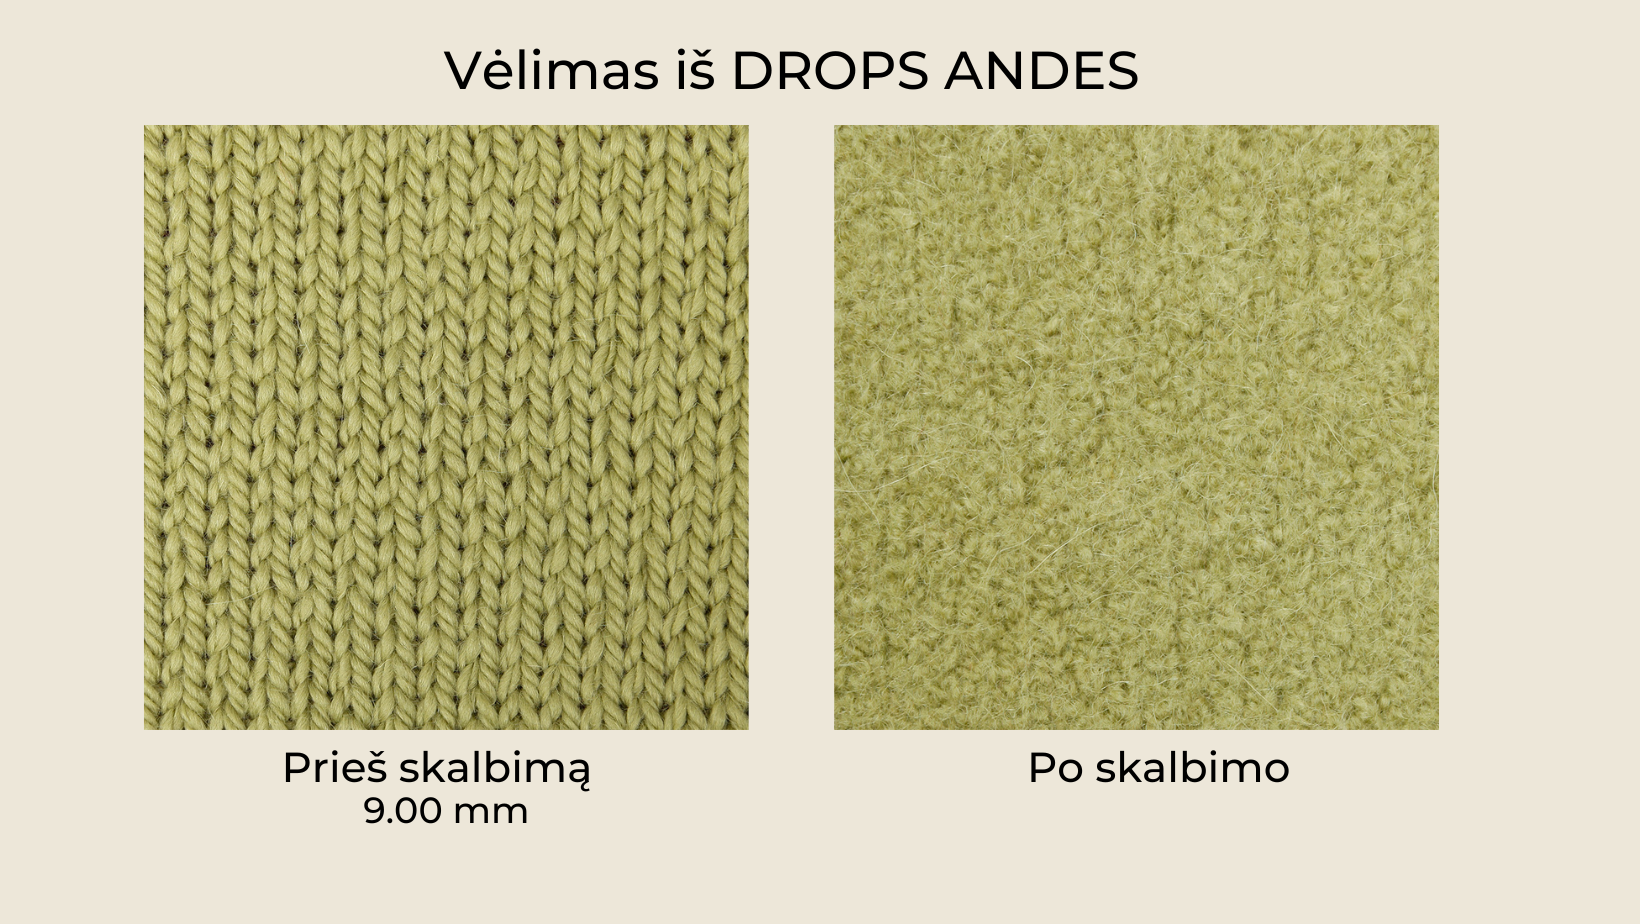 drops andes velimui - Siulų dama - siūlai mezgėjoms megzti kojines megztinius šalikus šalikas megztinis siūlų parduotuvė pigiausi siūlai geriausi pasiūlymai nemokama registracija - Siūlų Dama Siūlų pasaulis https://siuludama.lt Drops <strong>Sudėtis</strong>: 65 % avies vilna, 35 % alpaka <strong>Svoris/ilgis</strong>: 100 g apie 90 m <strong>Rekomenduojamas virbalų dydis</strong>: 9 mm <strong>Mezgimo tankis</strong>: 10 x 10 cm = 10 akių x 14 eilių <strong>Priežiūra</strong>: skalbti rankomis, max 30°C DRP-andes